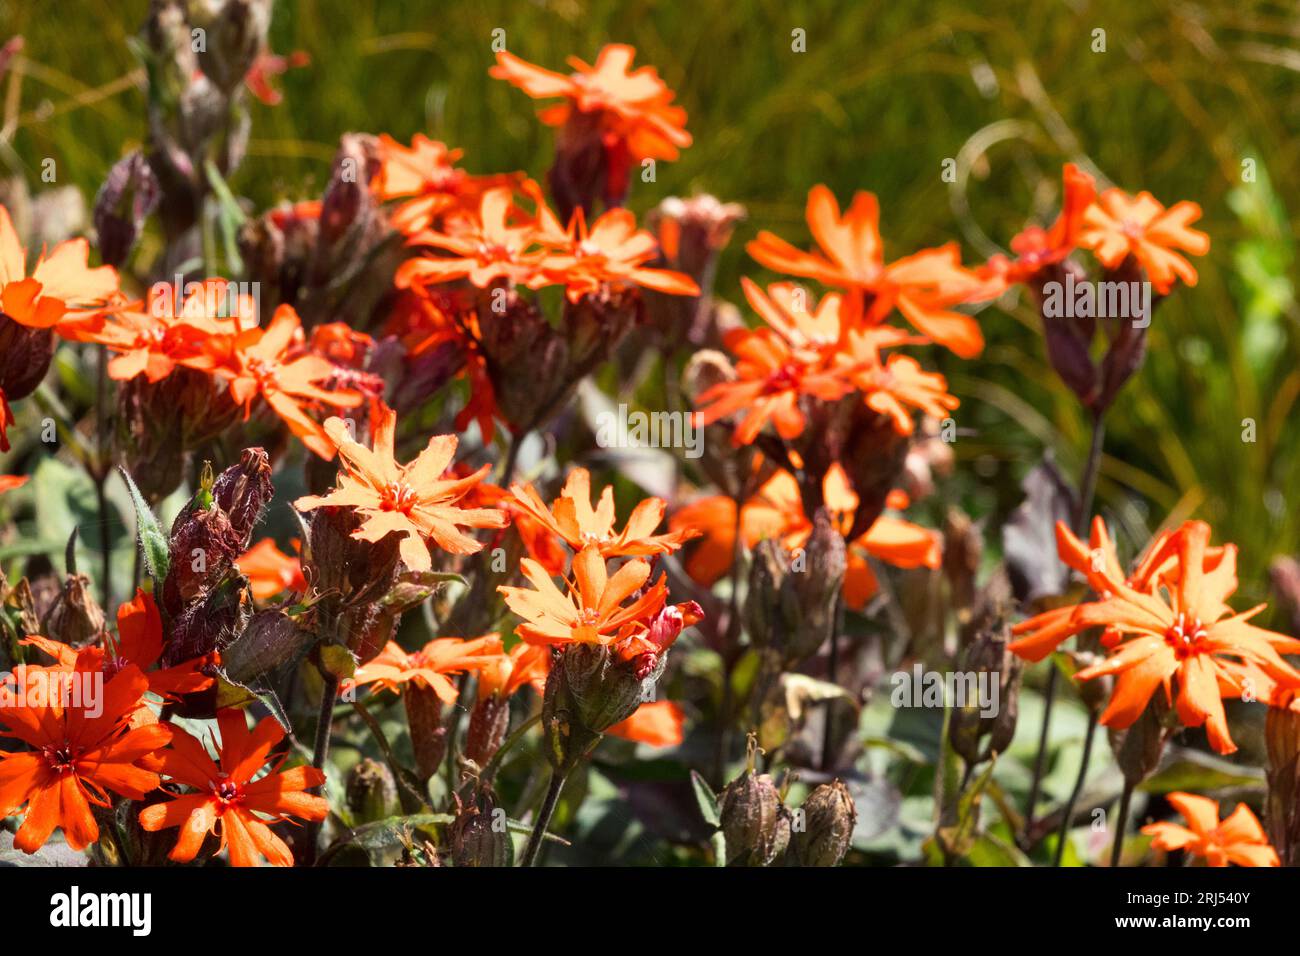 Lychnis arkwrightii 'Vesuvius' orange flowers Stock Photo